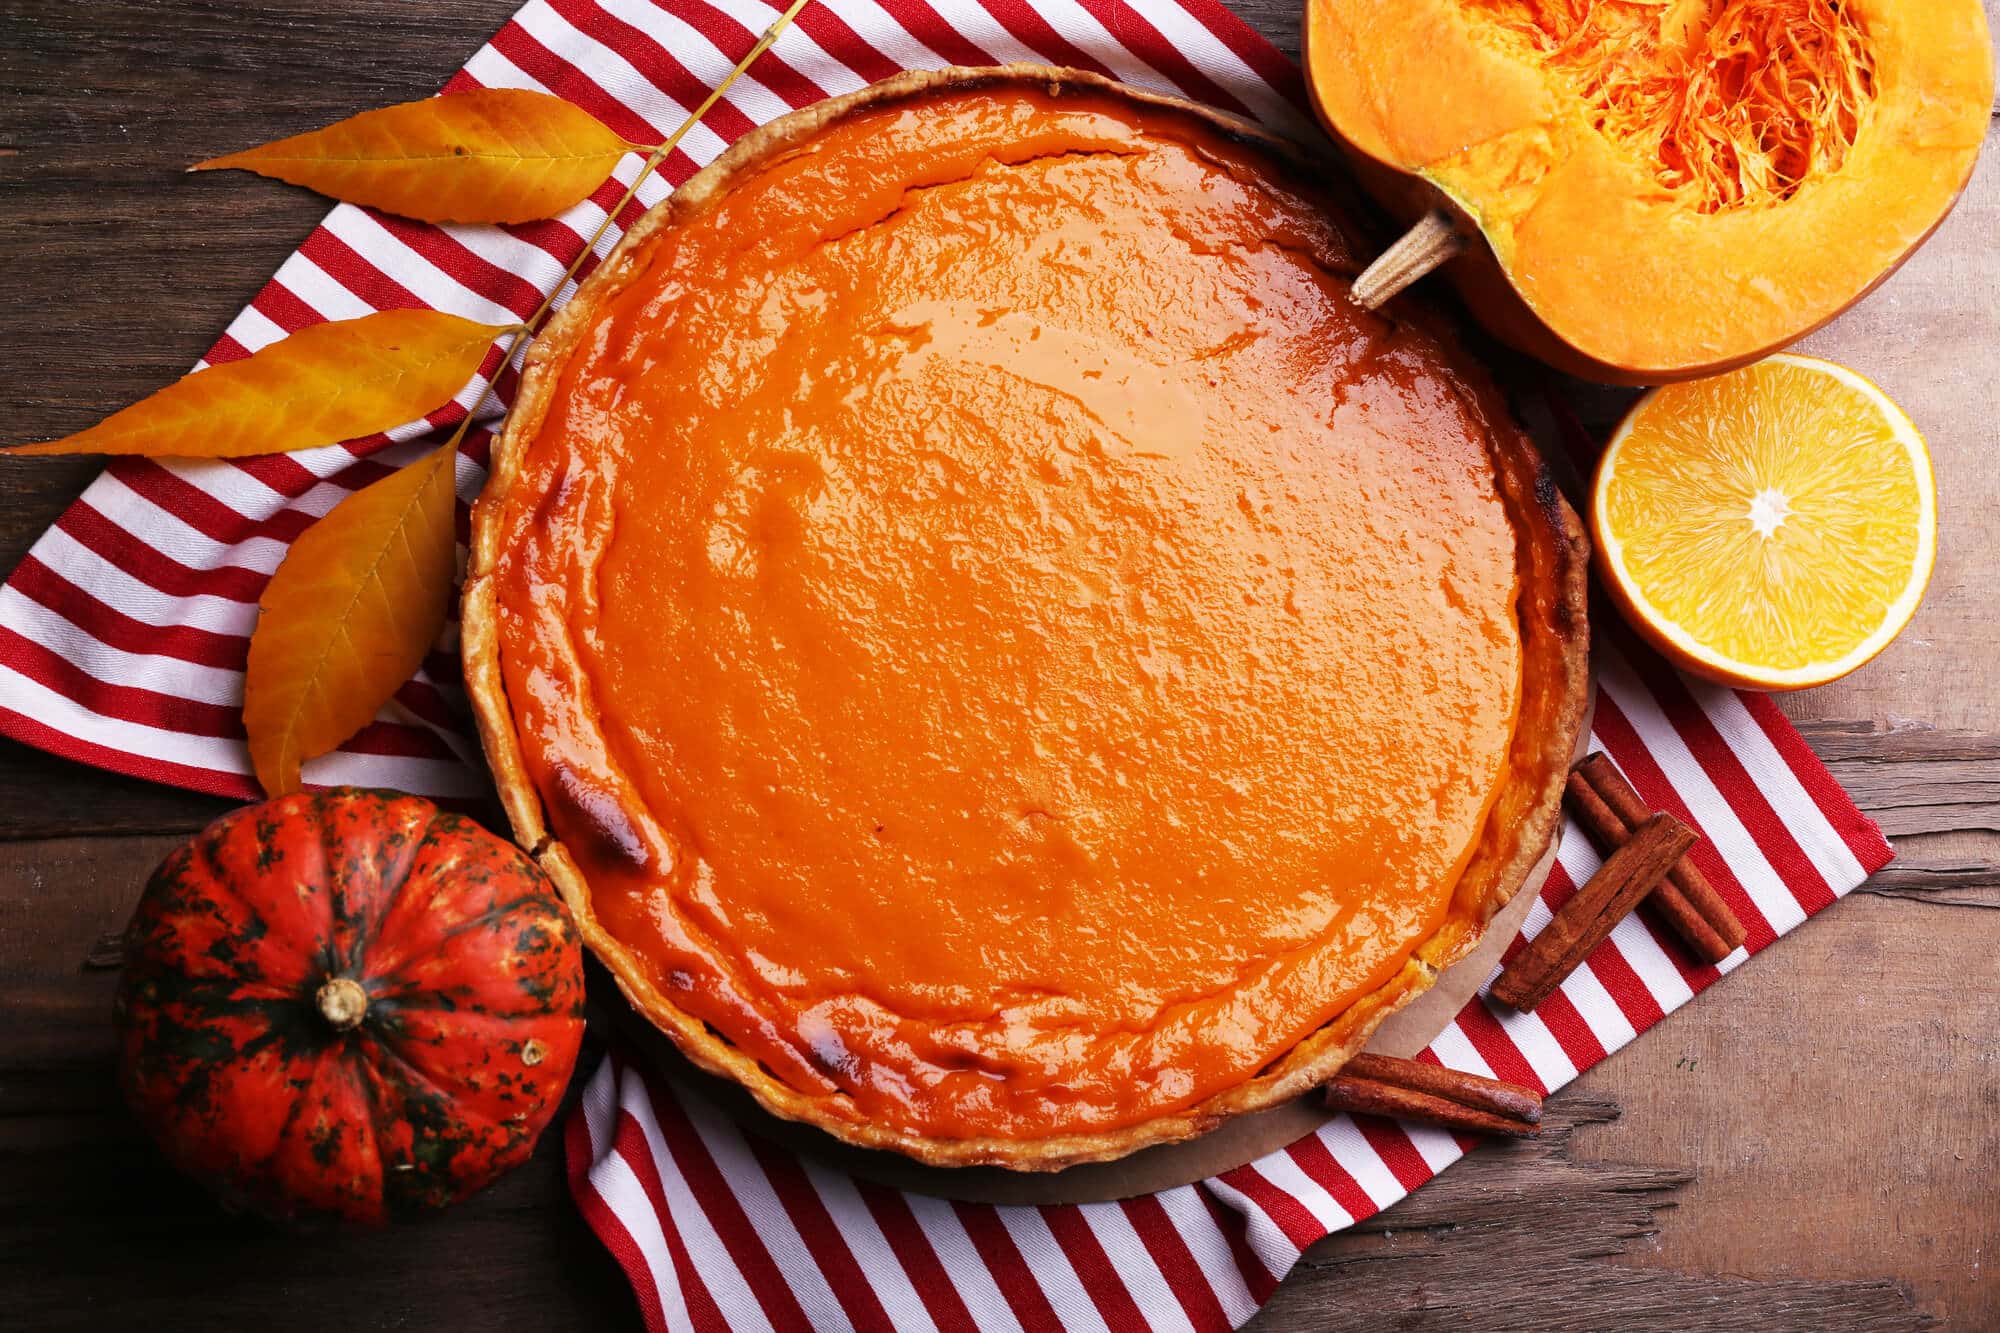 Homemade pumpkin pie on napkin, on wooden background